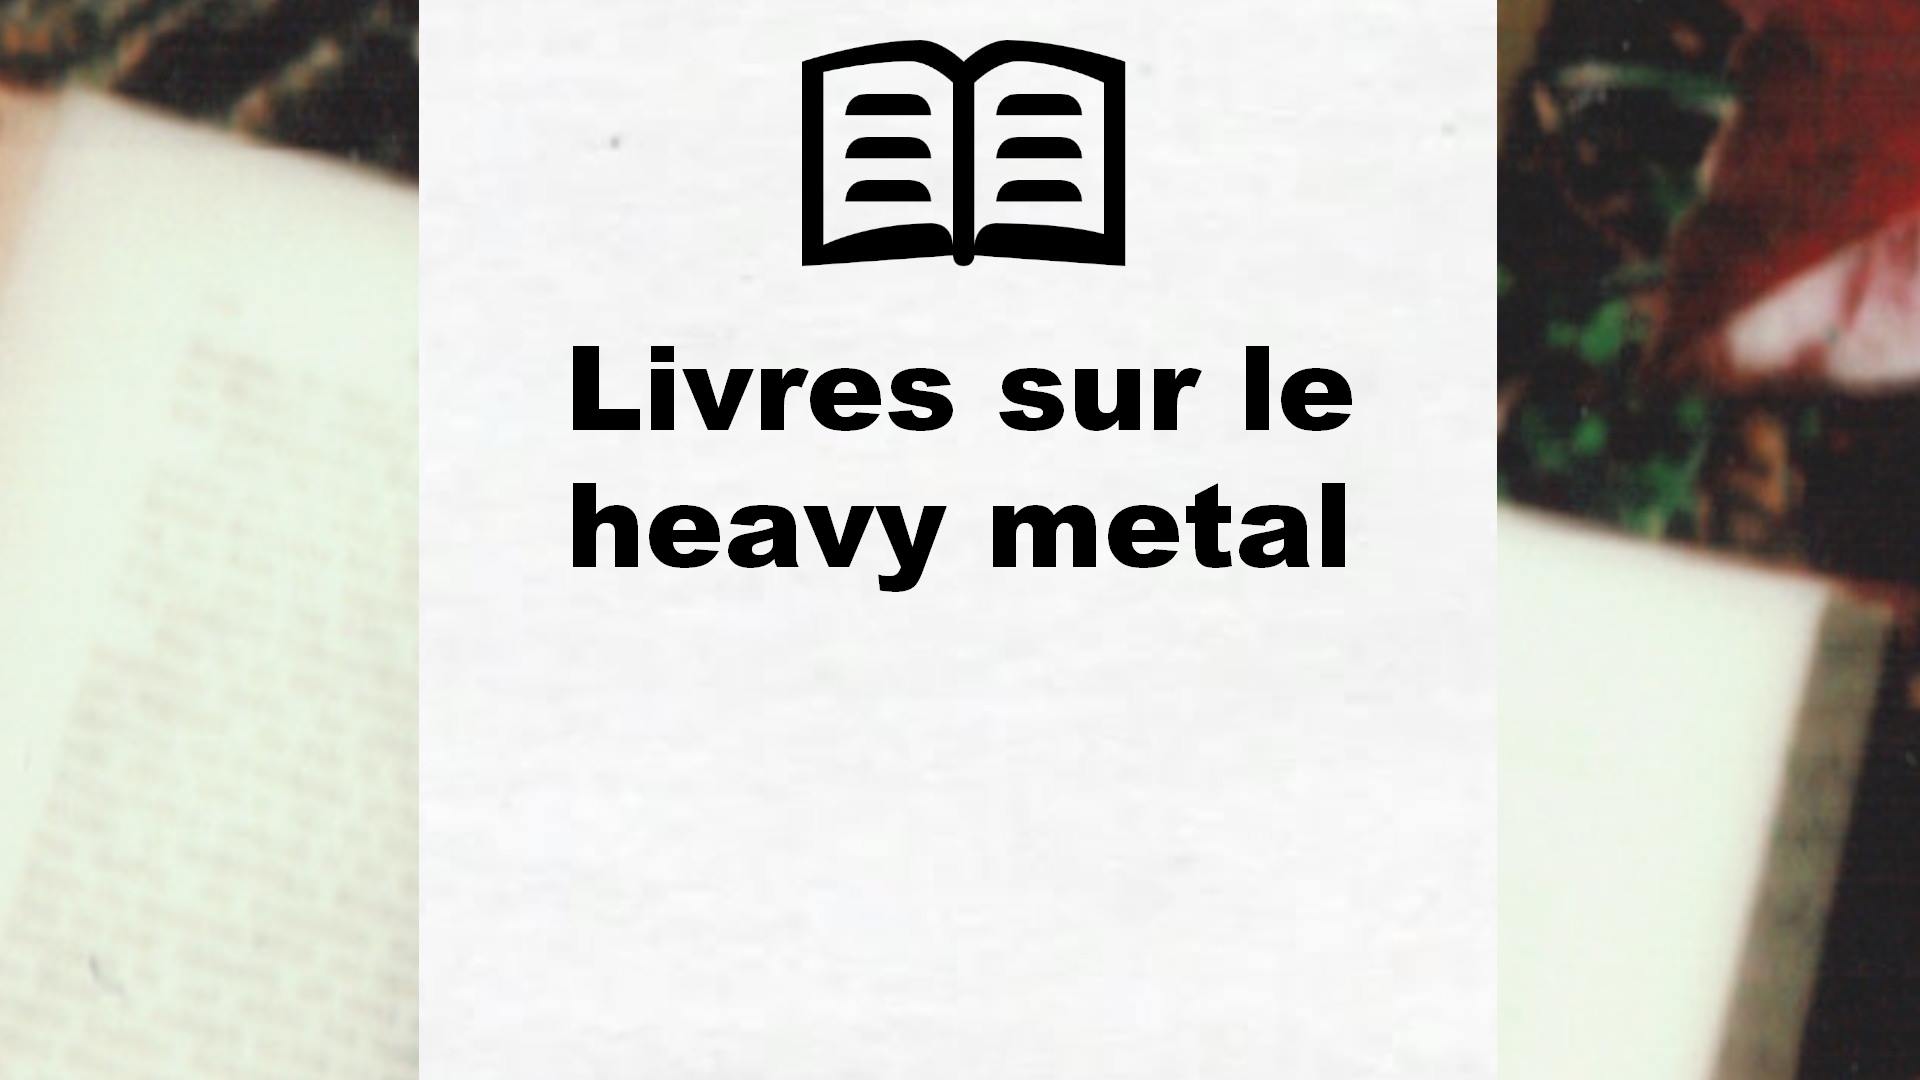 Livres sur le heavy metal